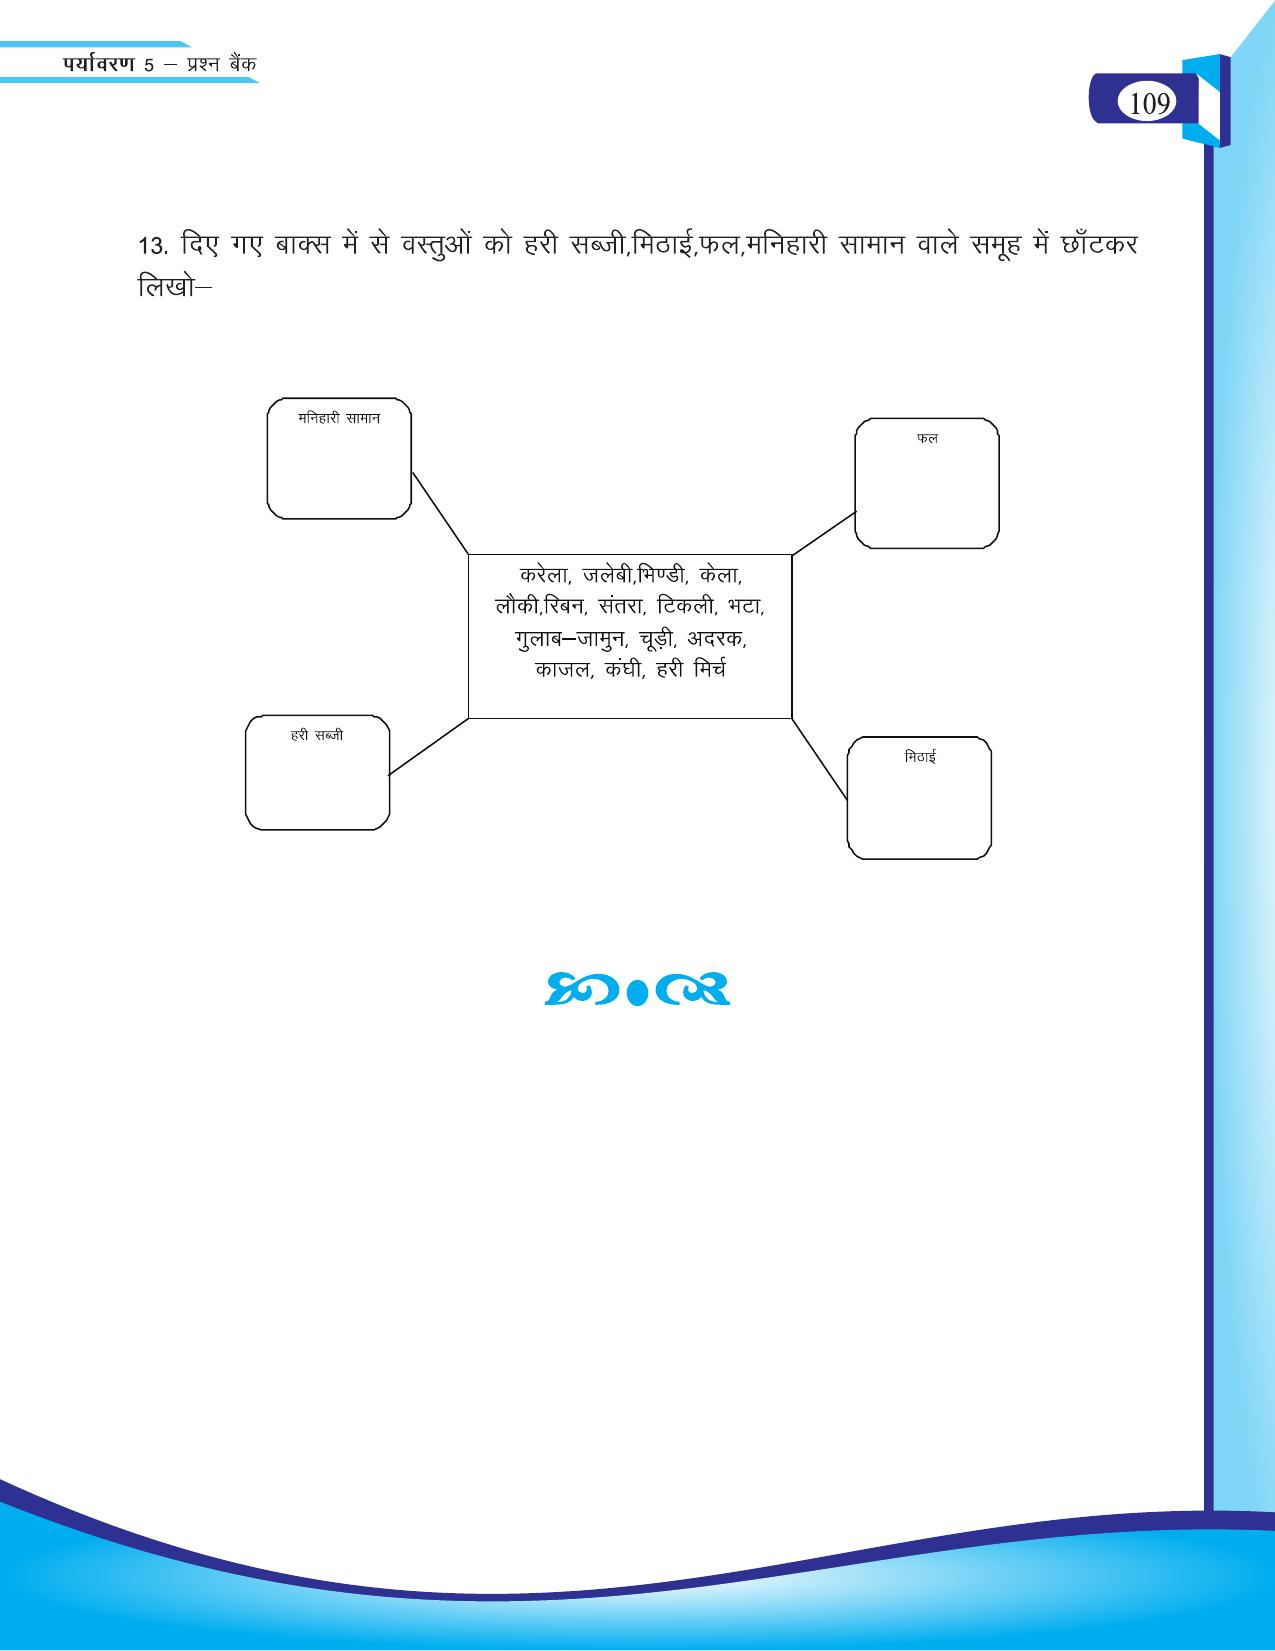 Chhattisgarh Board Class 5 EVS Question Bank 2015-16 - Page 35